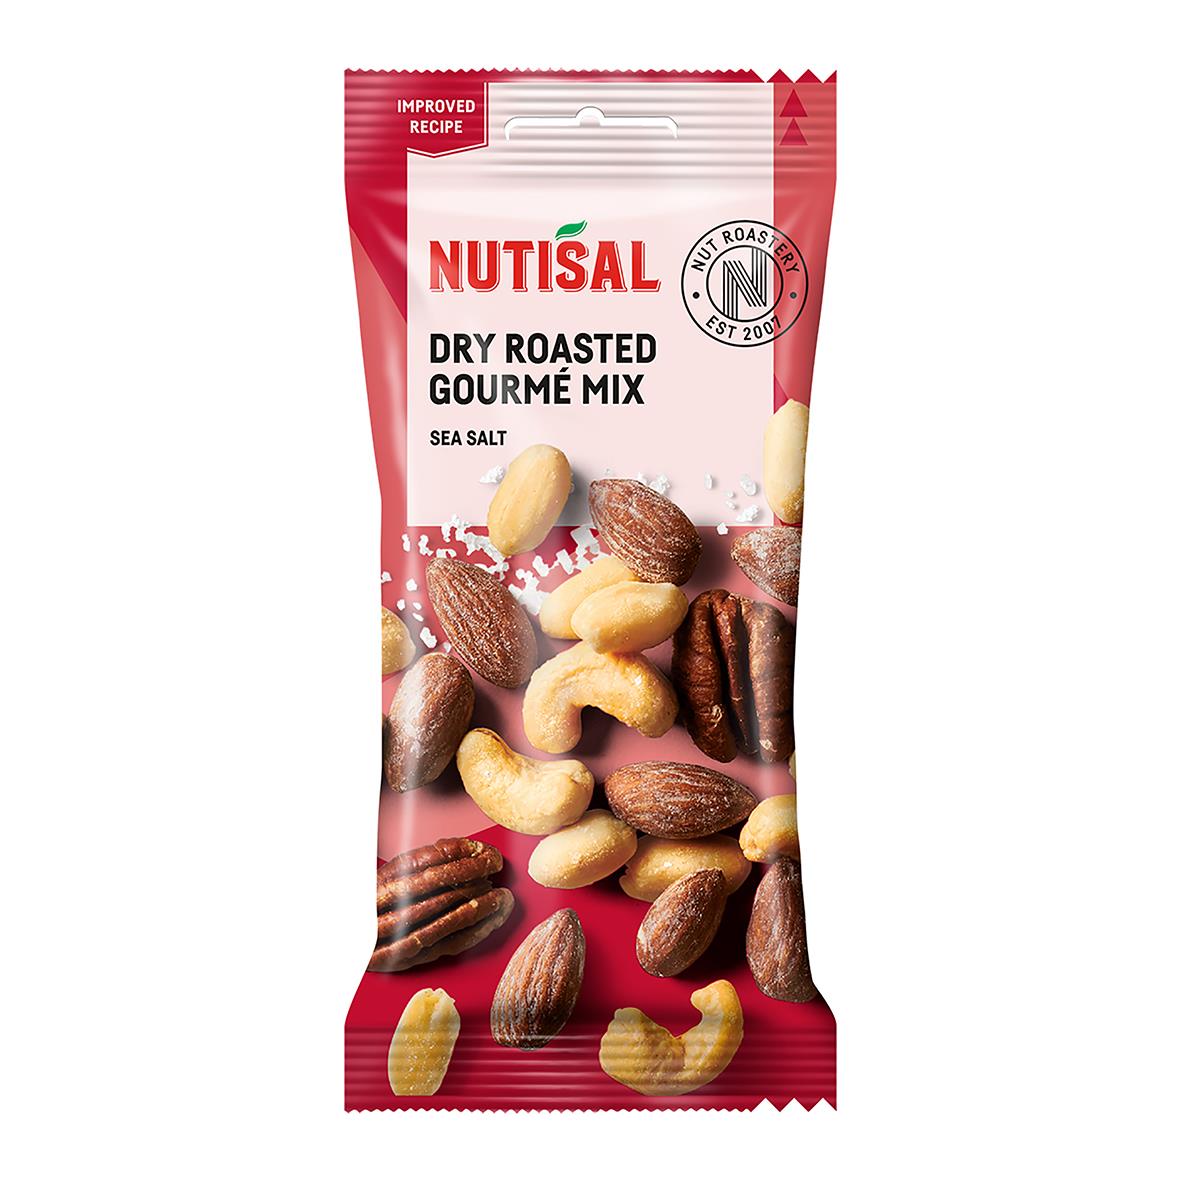 Nötter Nutisal Dry Roasted Gourmémix 60g 60022247